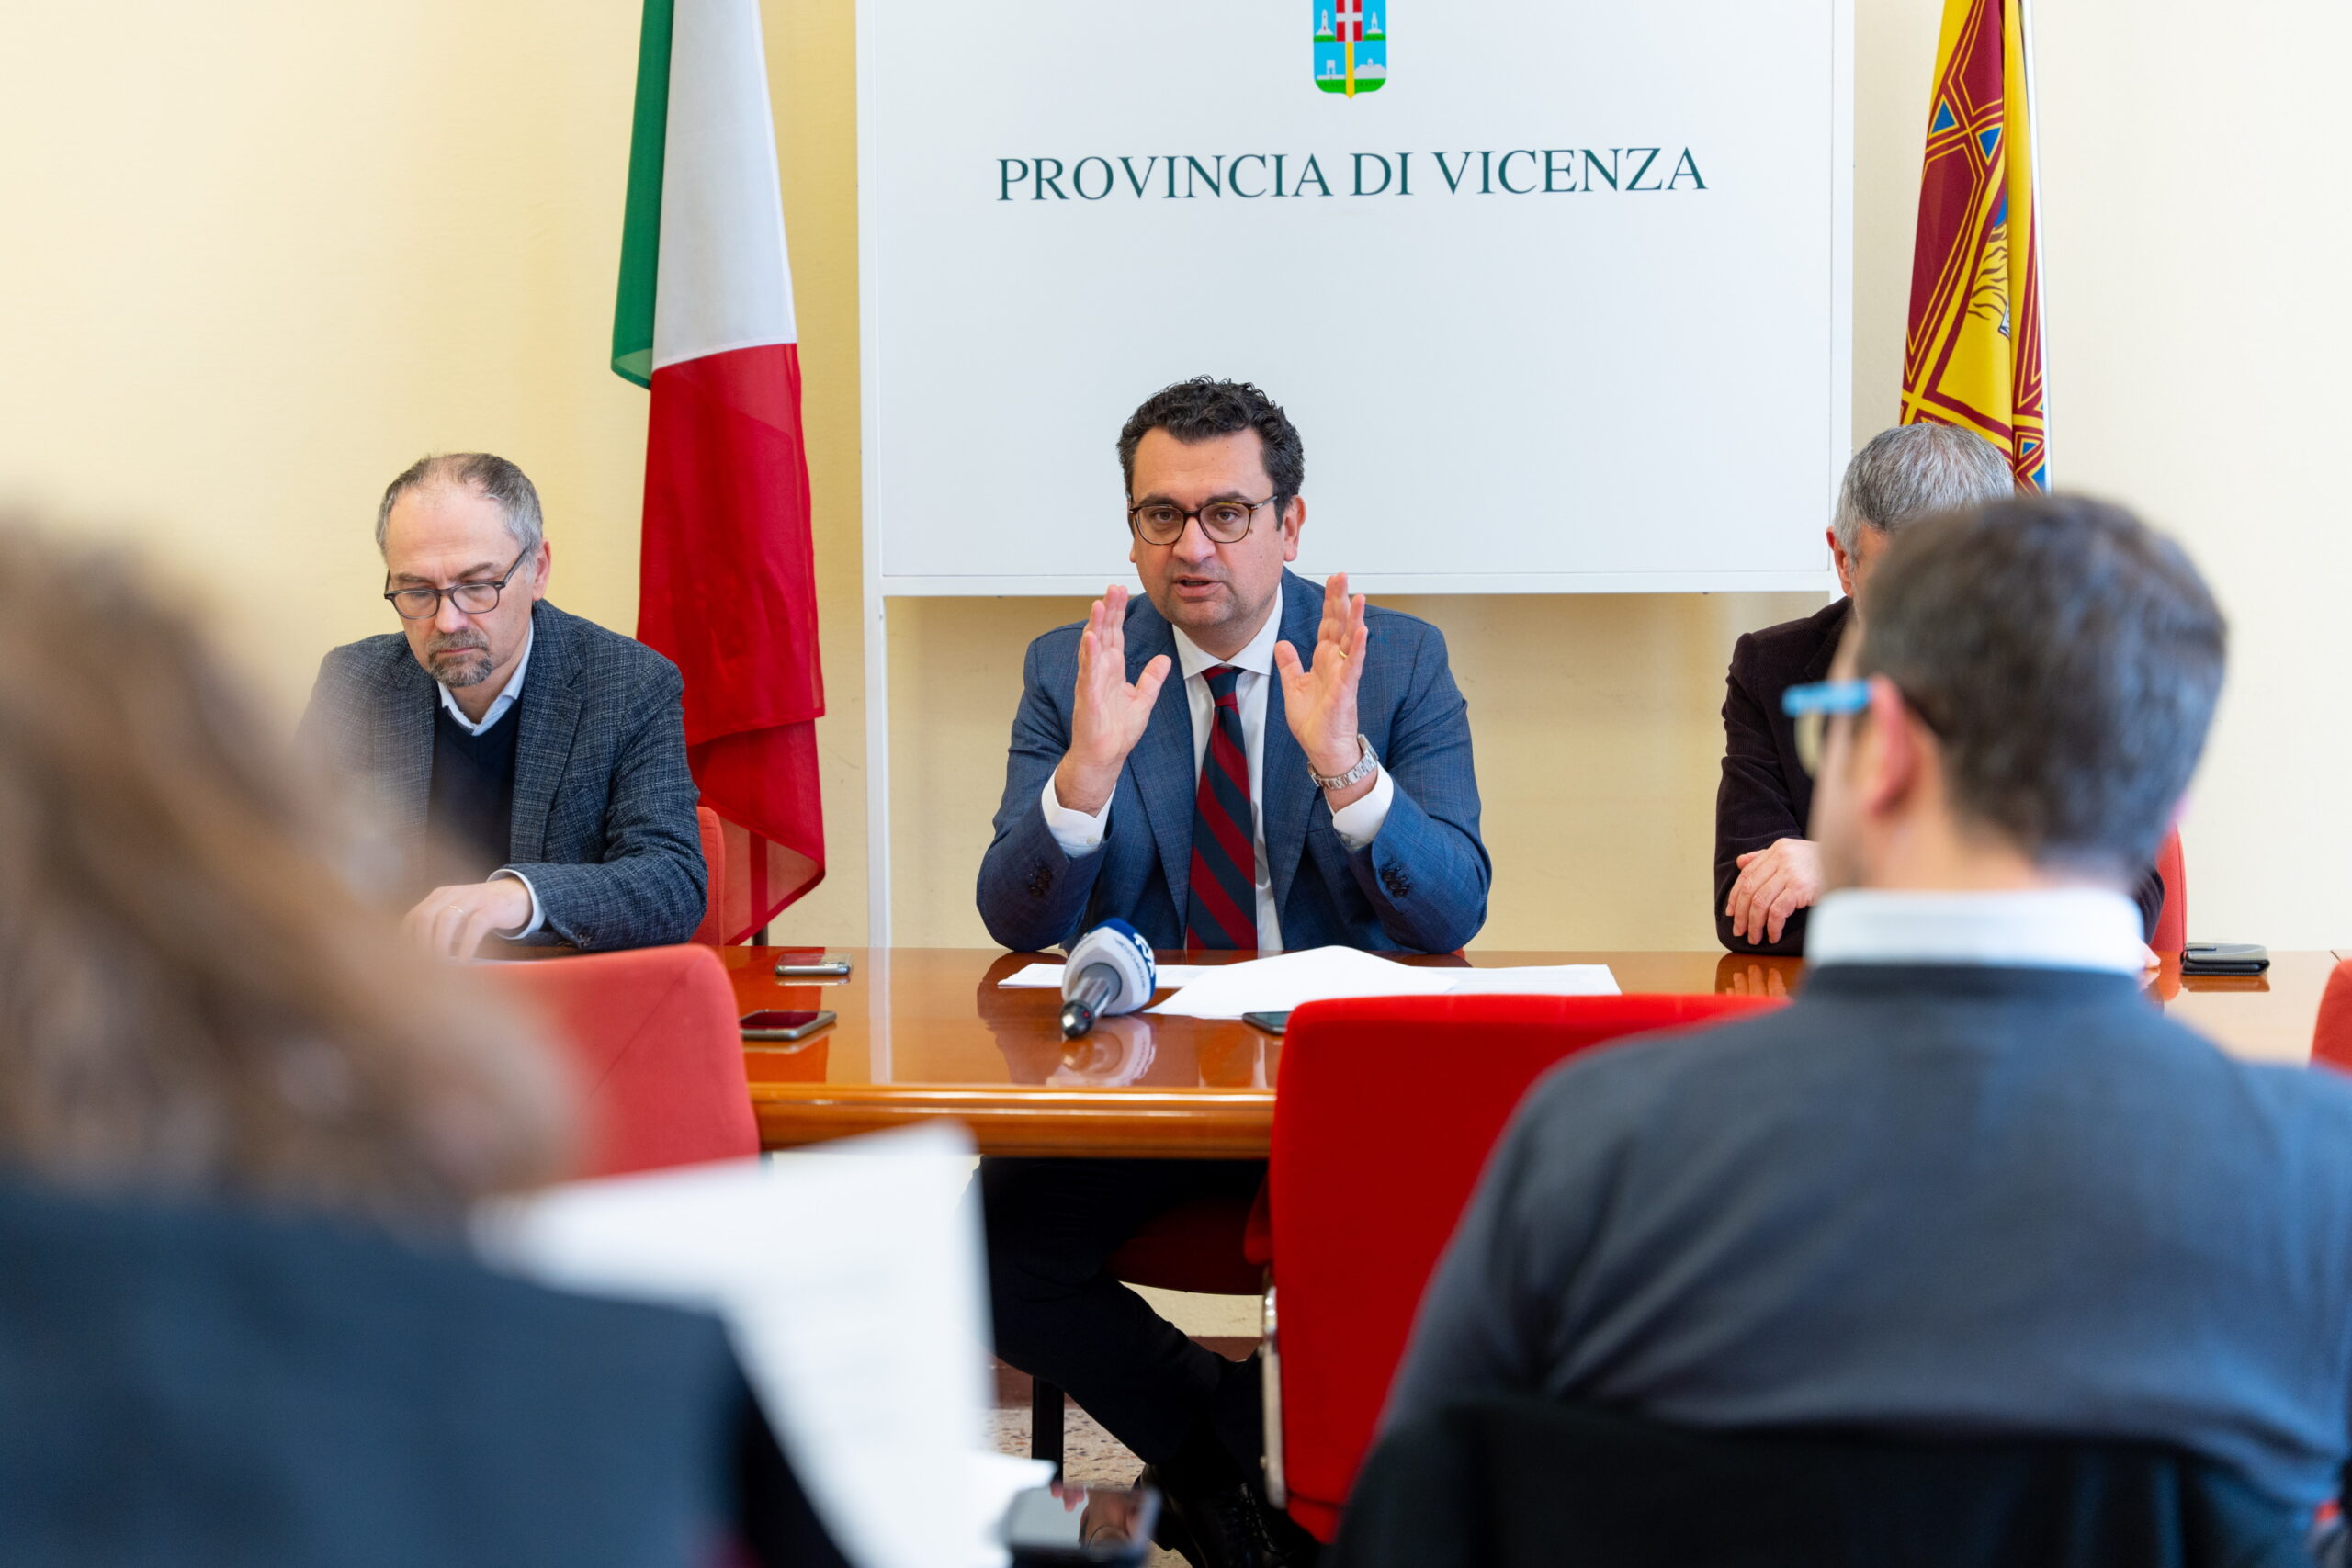 Francesco Rucco Fine mandato presidente provincia di Vicenza